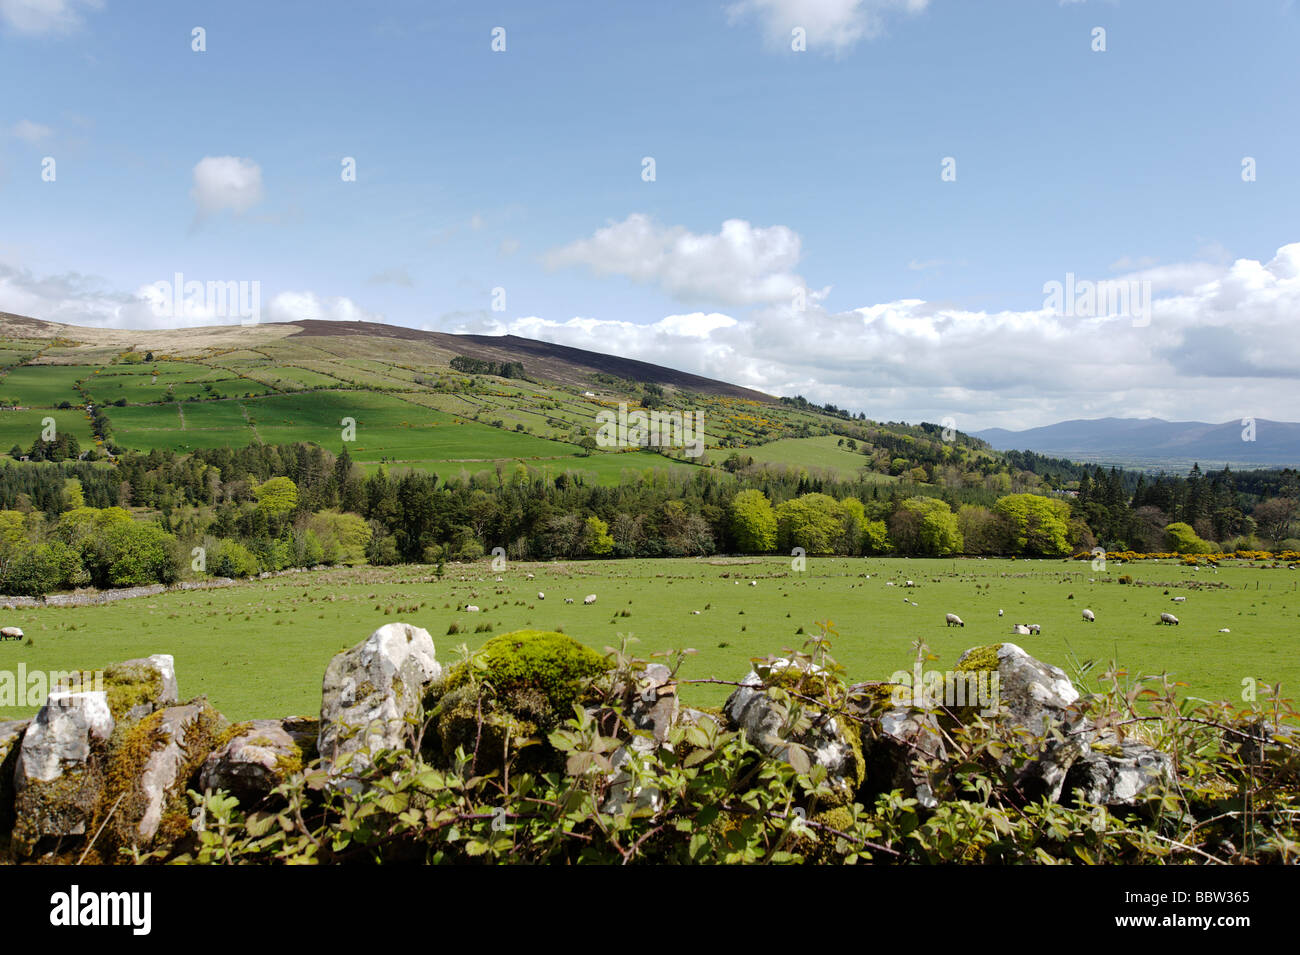 Affacciato in pietra a secco a parete di verdi colline e campi coltivati nella zona di Clonmel nella Contea di Tipperary Sud Irlanda Foto Stock